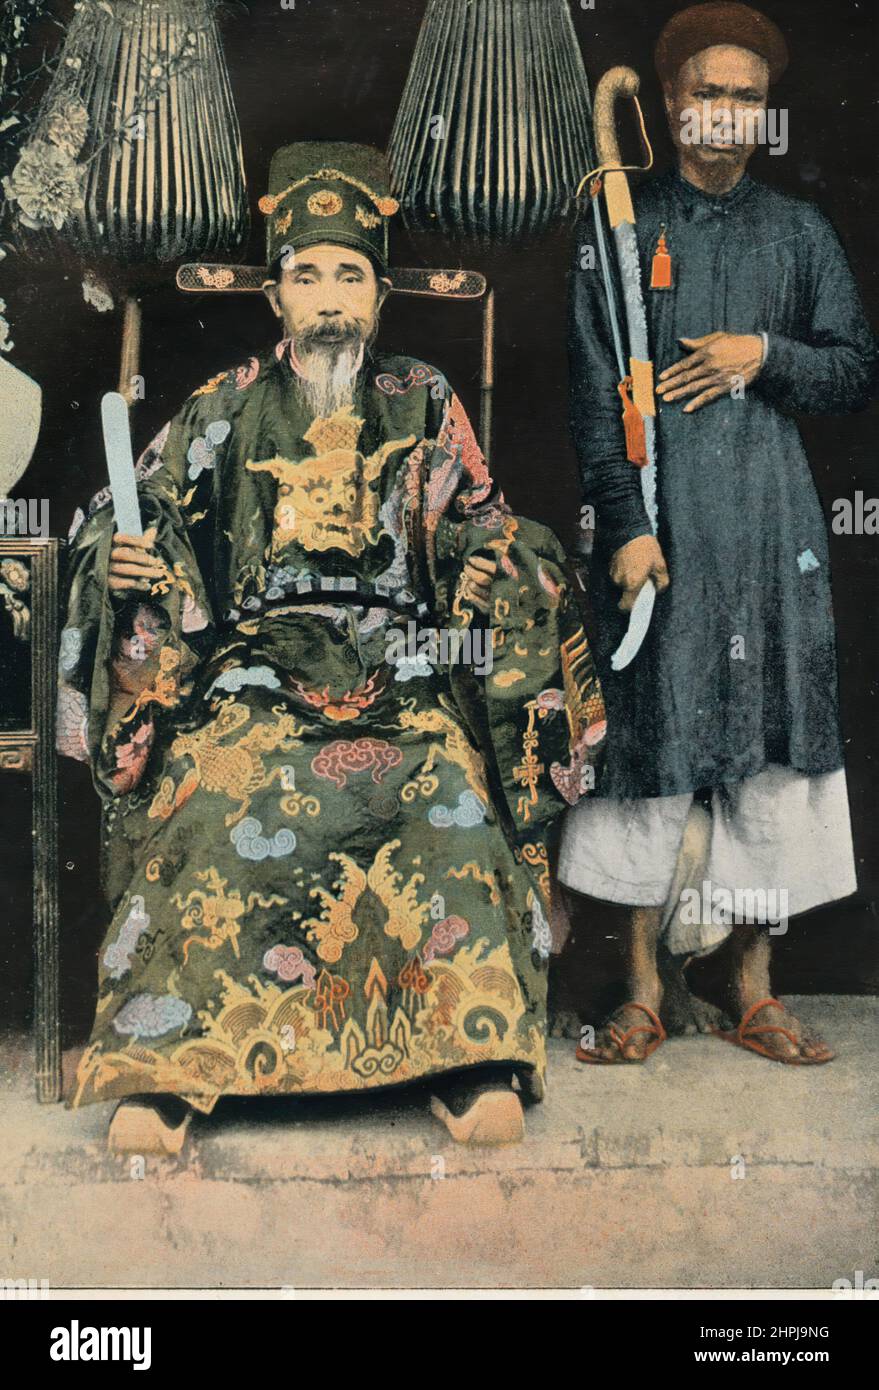 LE KINH-LUoc. Autour Du Monde Tonkin - Vietnam II 1895 - 1900 (2) - 19. Jahrhundert französischer Farbfotografiedruck Stockfoto